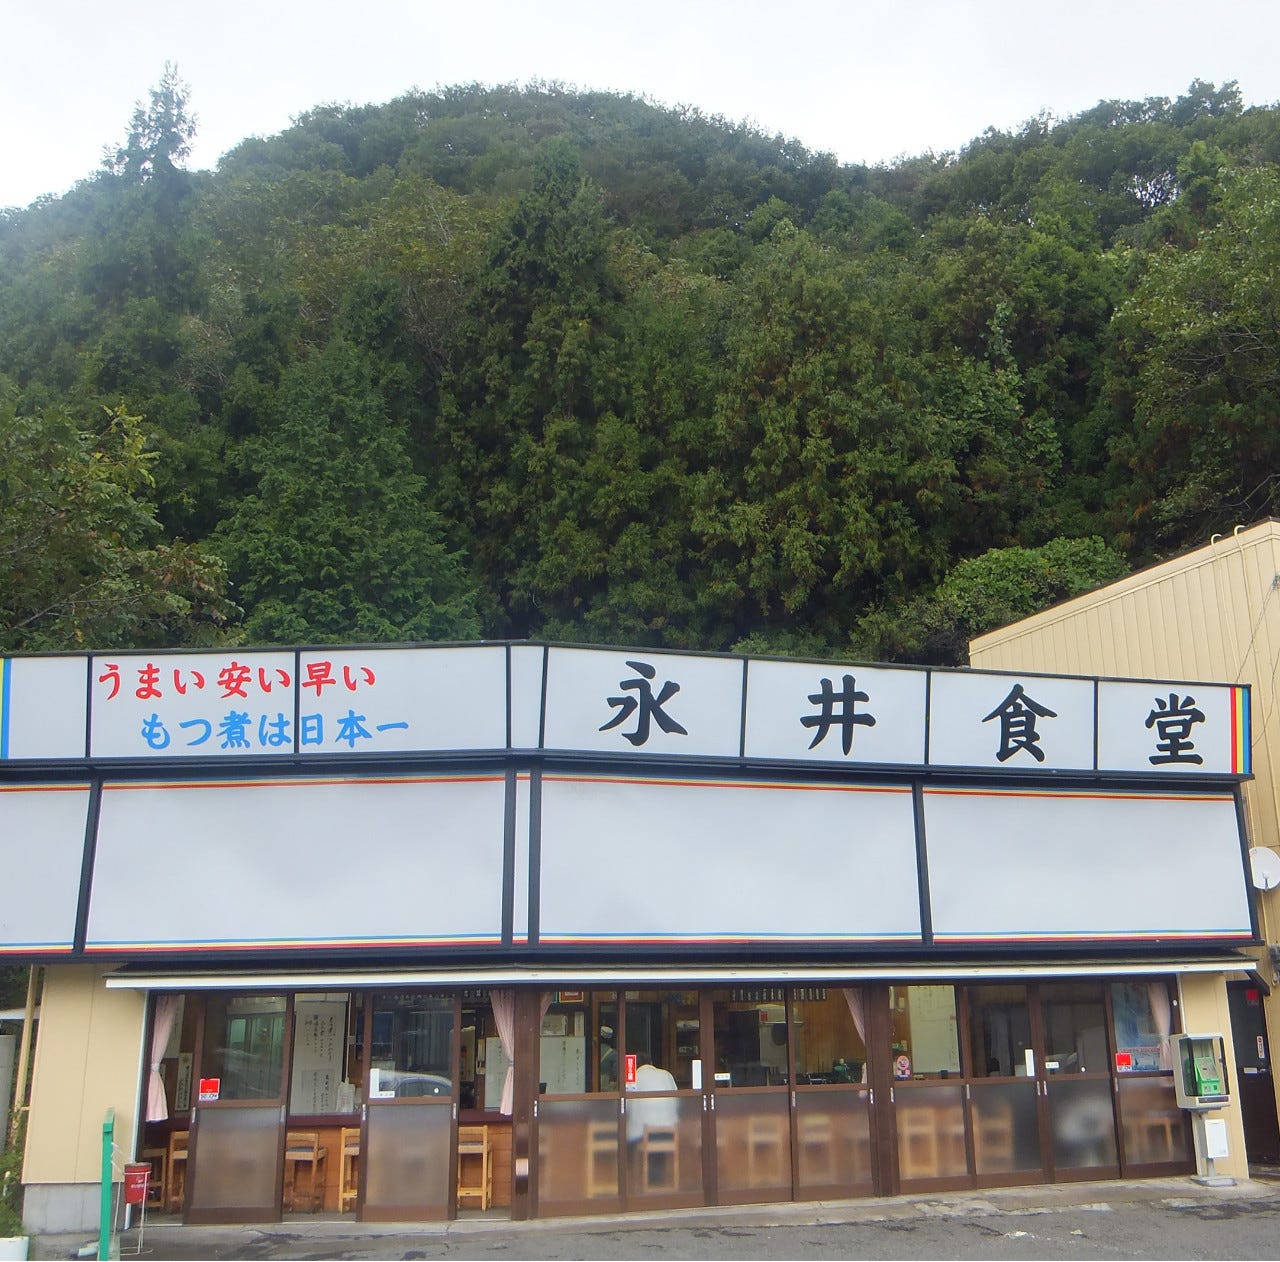 山あいに立つ永井食堂の白いファサード看板と平屋建店舗の全景